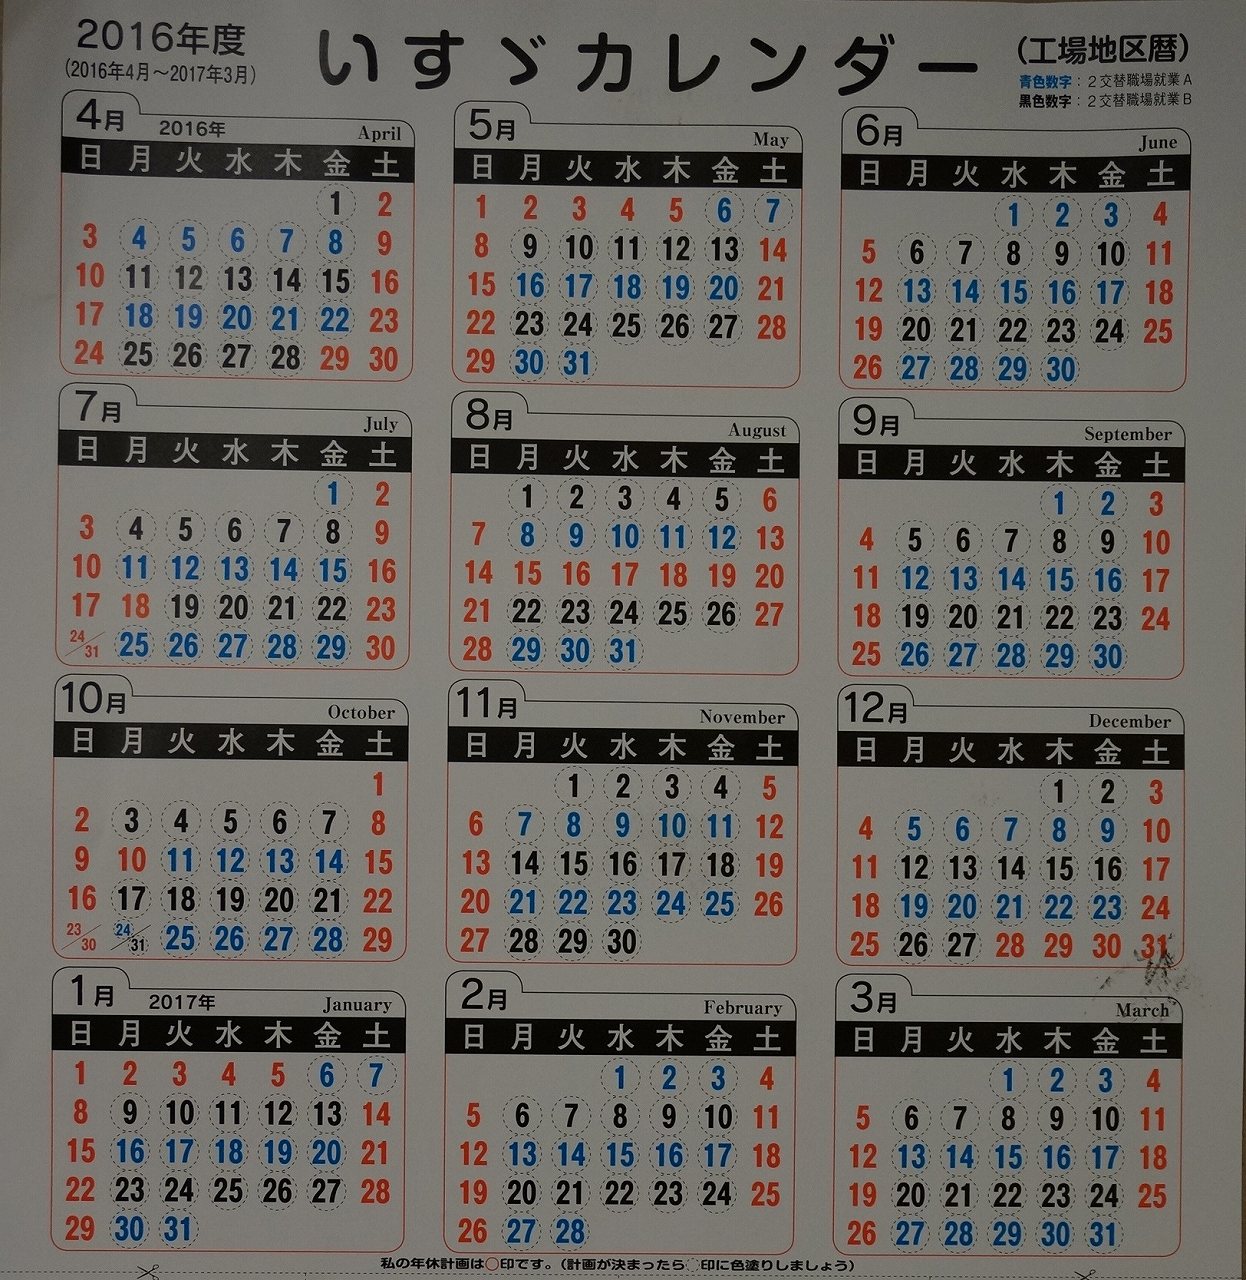 いすゞ期間工 臨時従業員 ブログ 藤沢 いすゞカレンダー 16